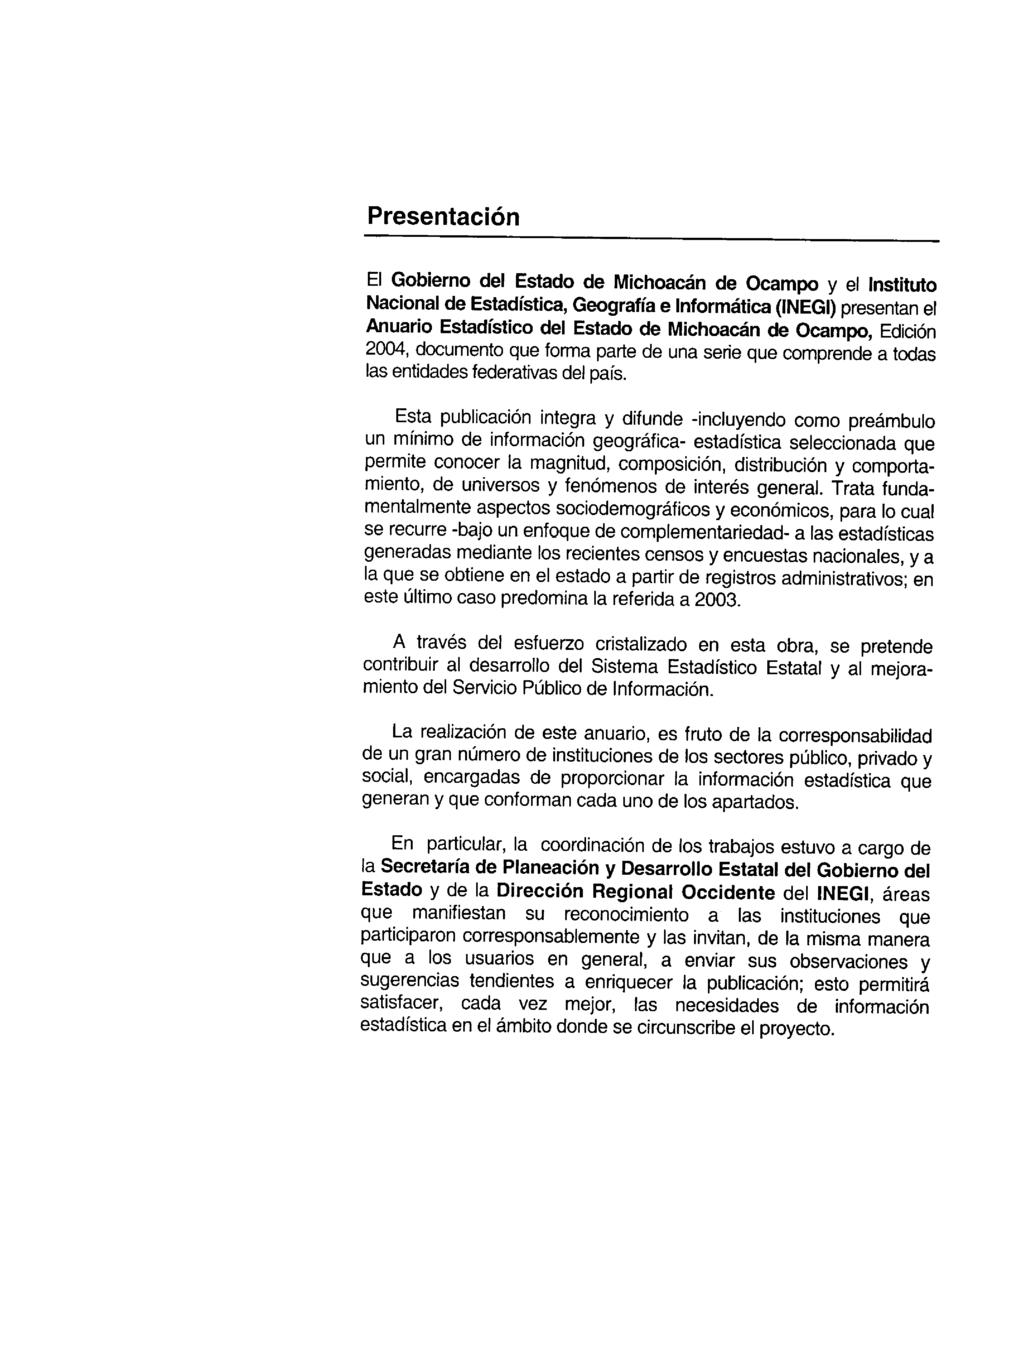 Presentación El Gobierno del Estado de Michoacán de Ocampo y el Instituto Nacional de Estadística, Geografía e Informática (INEGI) presentan el Anuario Estadístico del Estado de Michoacán de Ocampo,